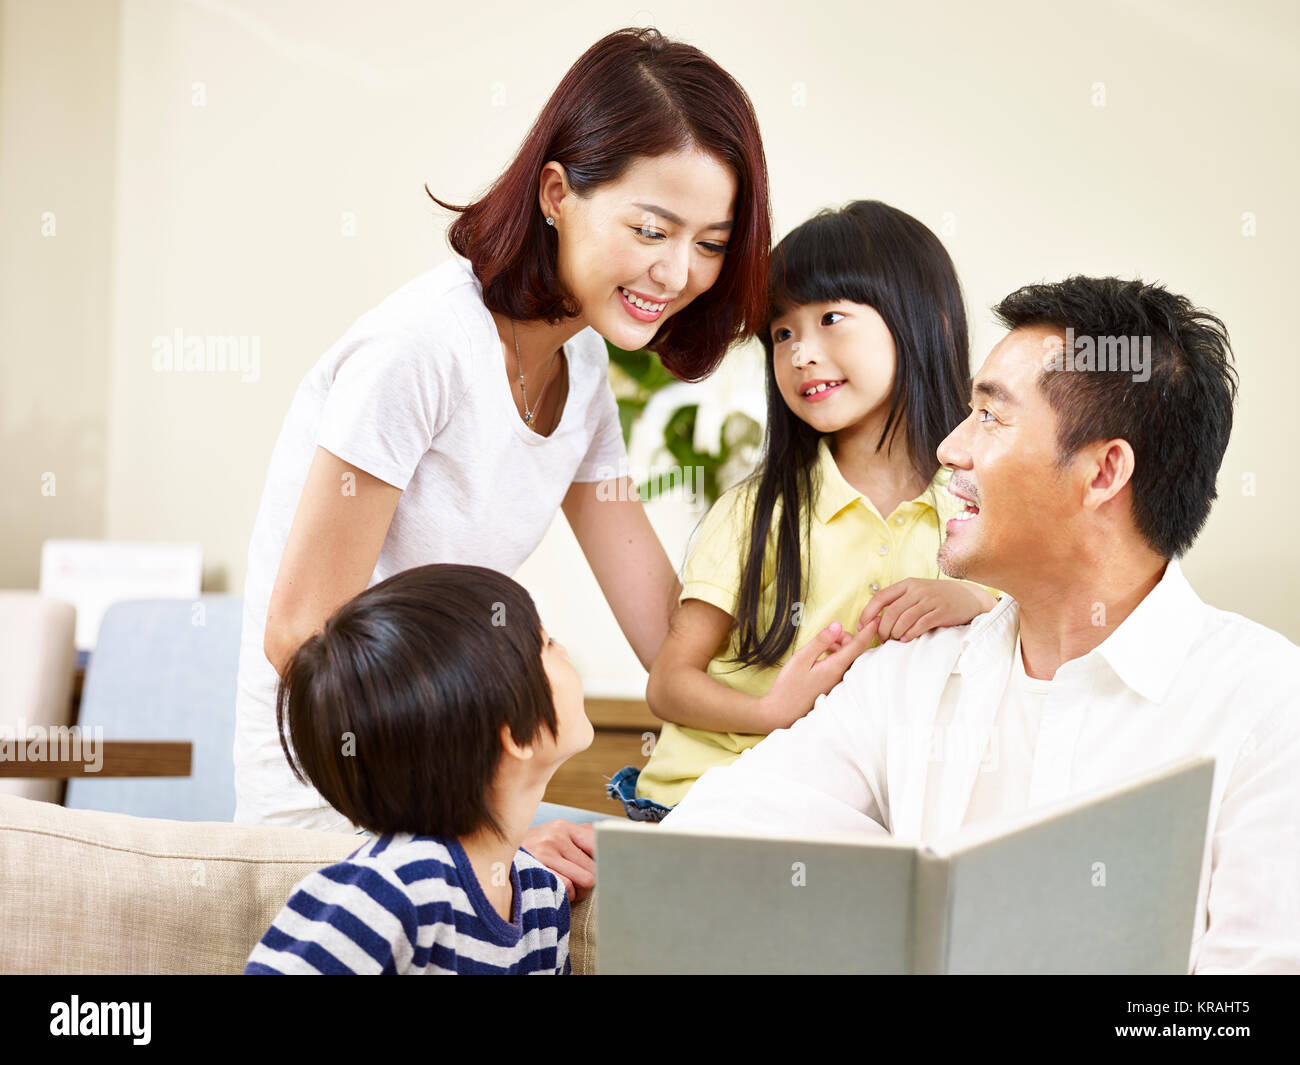 Asiatische Eltern Vater und Mutter und zwei Kinder, Sohn und Tochter, ein Buch lesen, eine Geschichte zu erzählen. Stockfoto